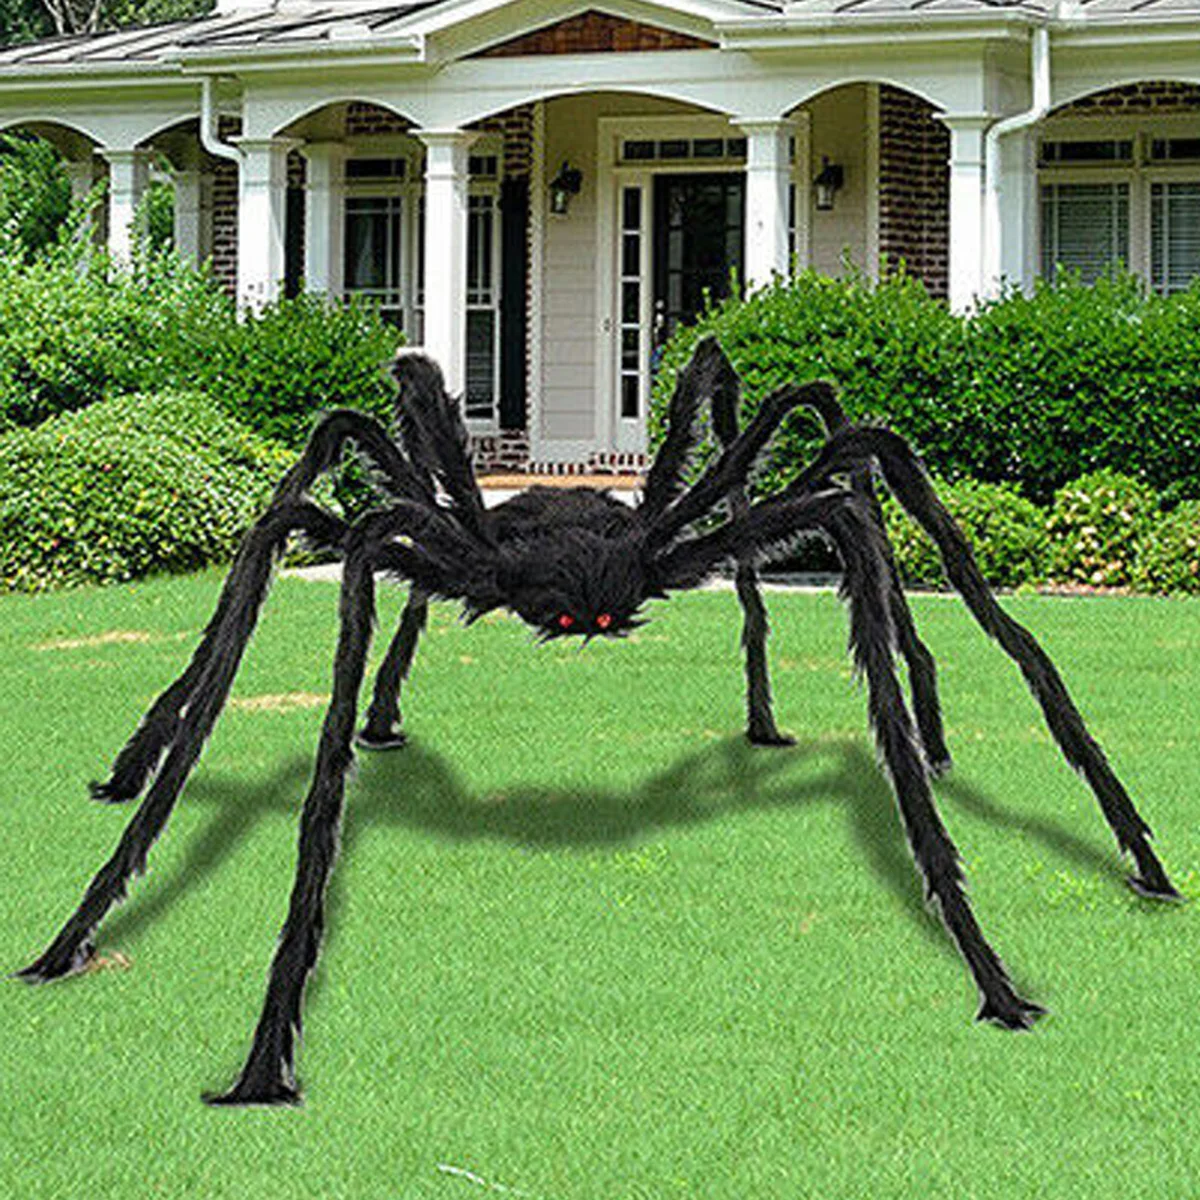 Spider Halloween Decoration Haunted House Prop Indoor Outdoor Black Giant 2 Size 